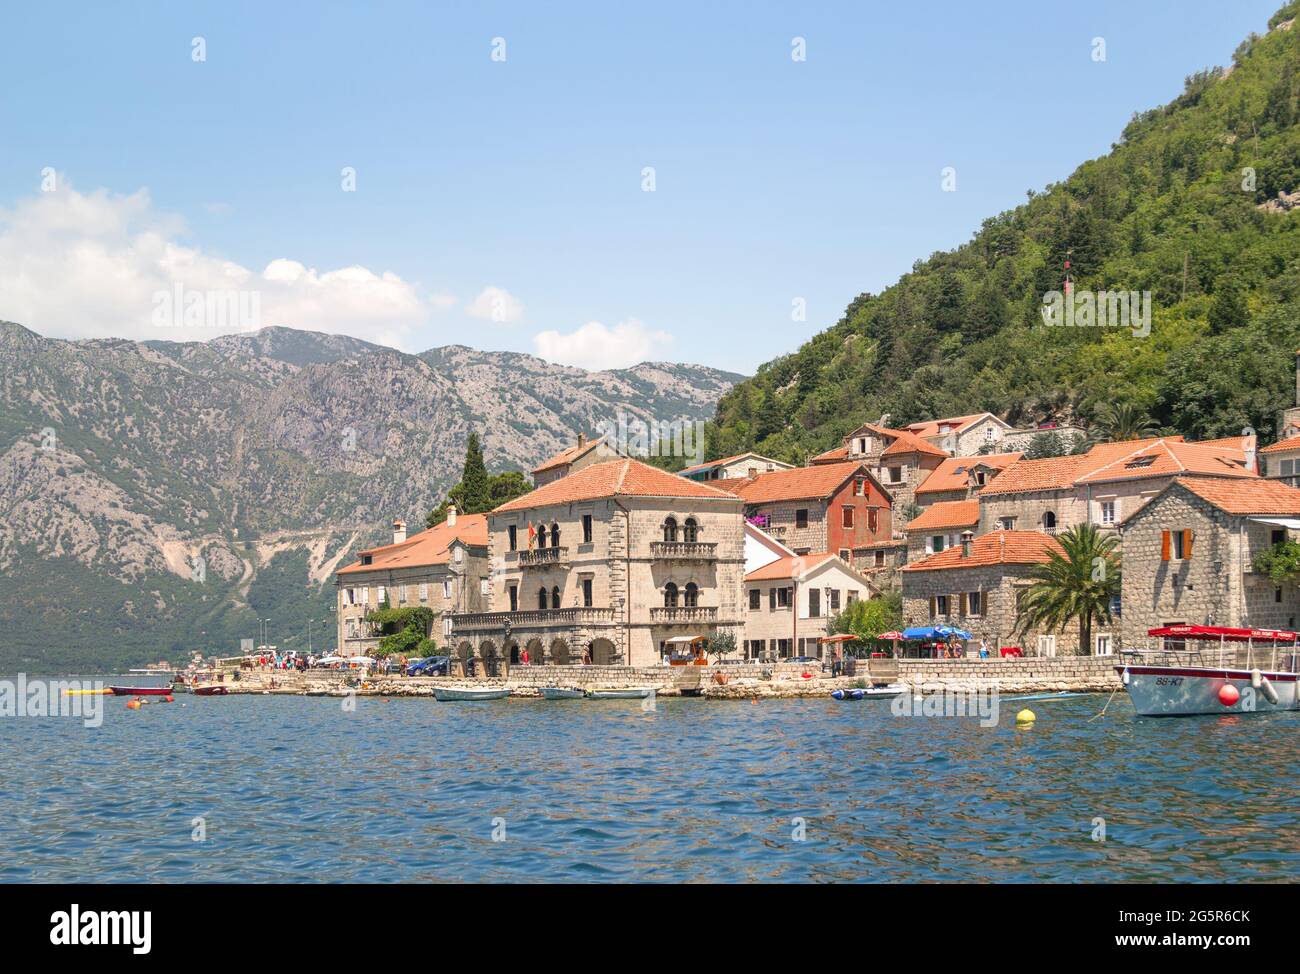 Perast, Montenegro - 6. Juli 2014: Blick auf den historischen Teil der Stadt, gelegen an der weltberühmten Bucht von Kotor. Stockfoto